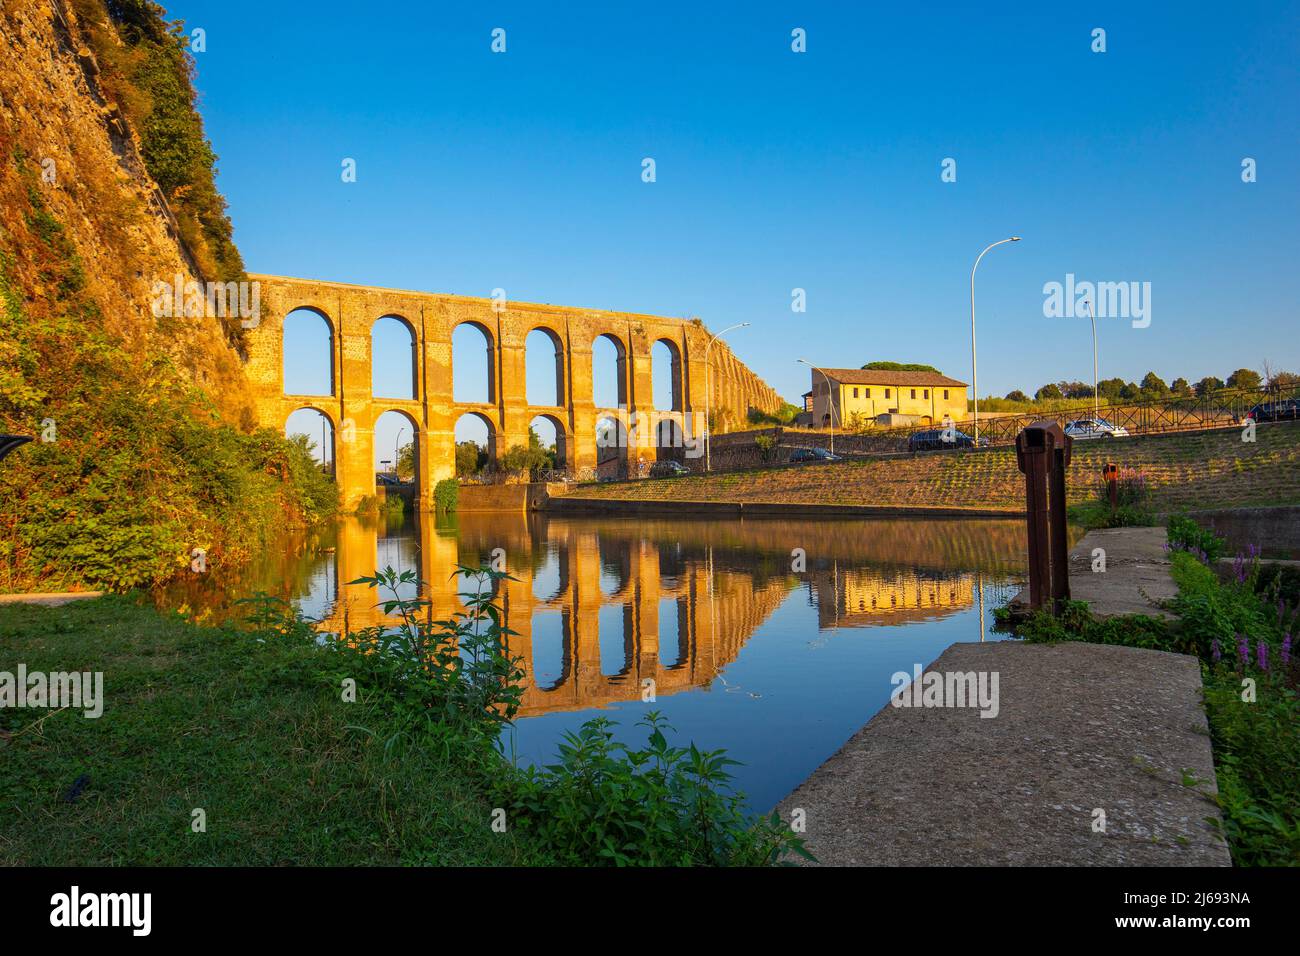 Aqueduc romain, Nepi, Viterbo, Latium, Italie Banque D'Images